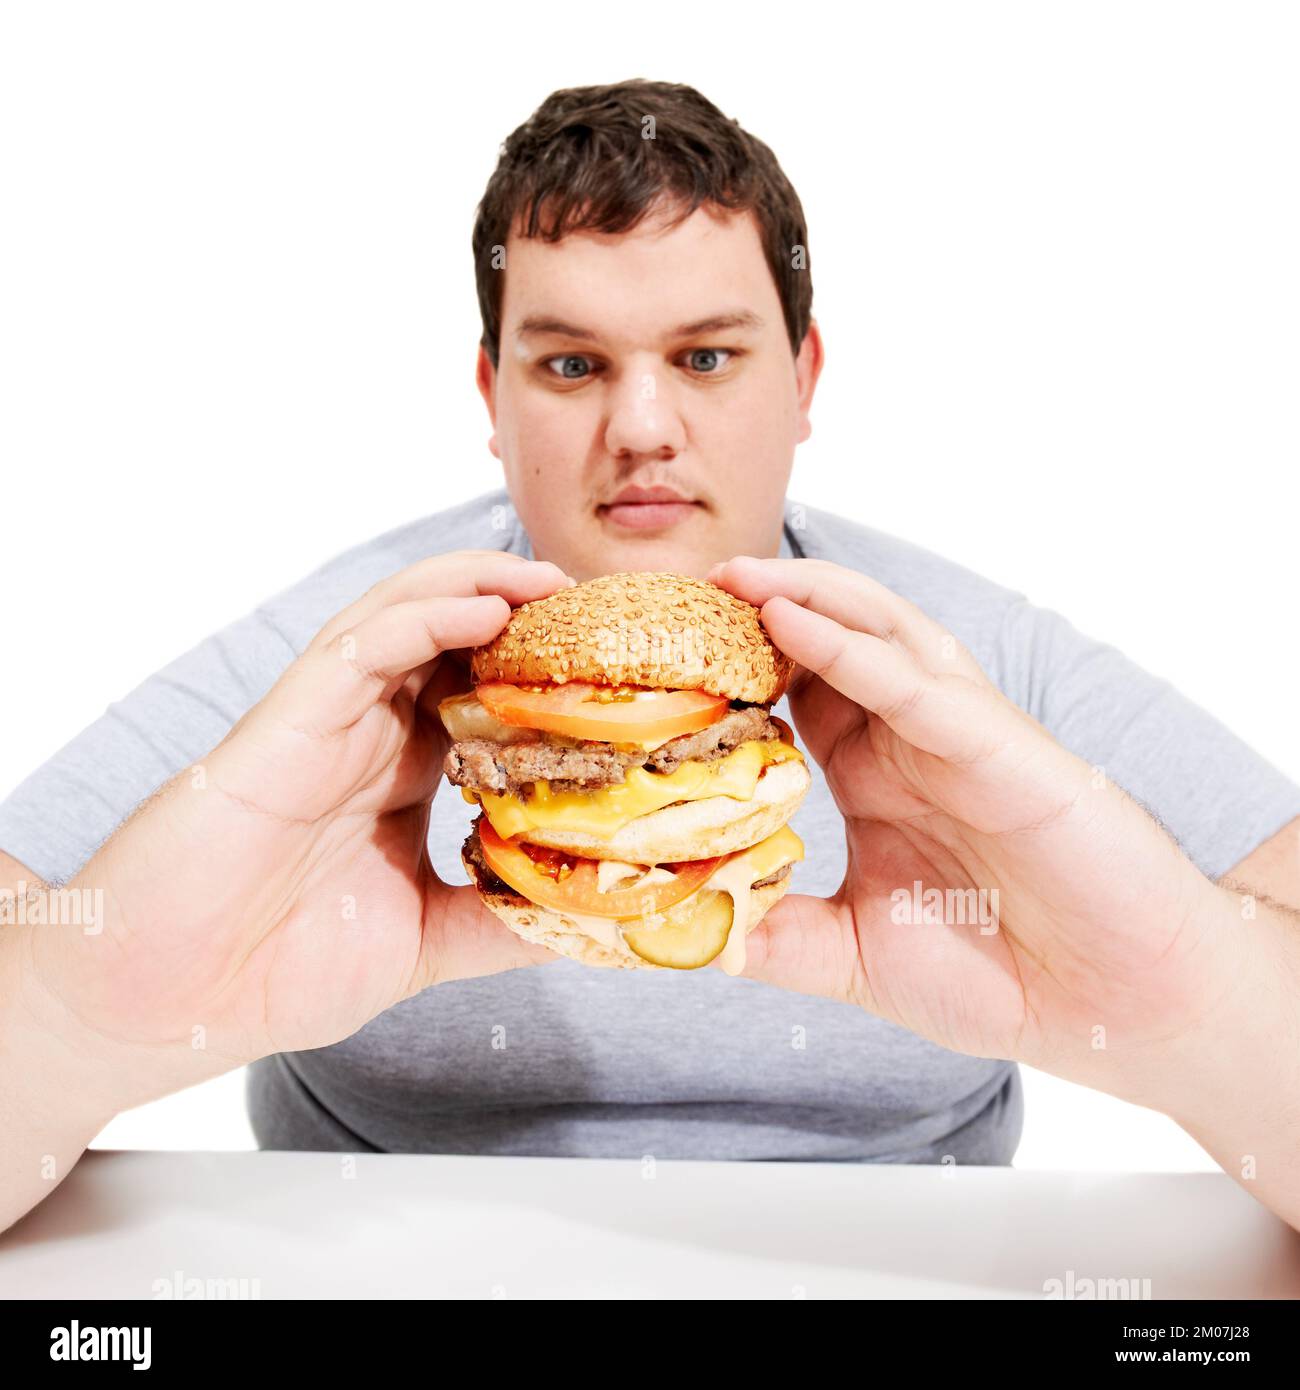 Ciao hamburger youre circa per essere mangiato. Un giovane obese che guarda con anarchia l'hamburger che sta tenendo. Foto Stock